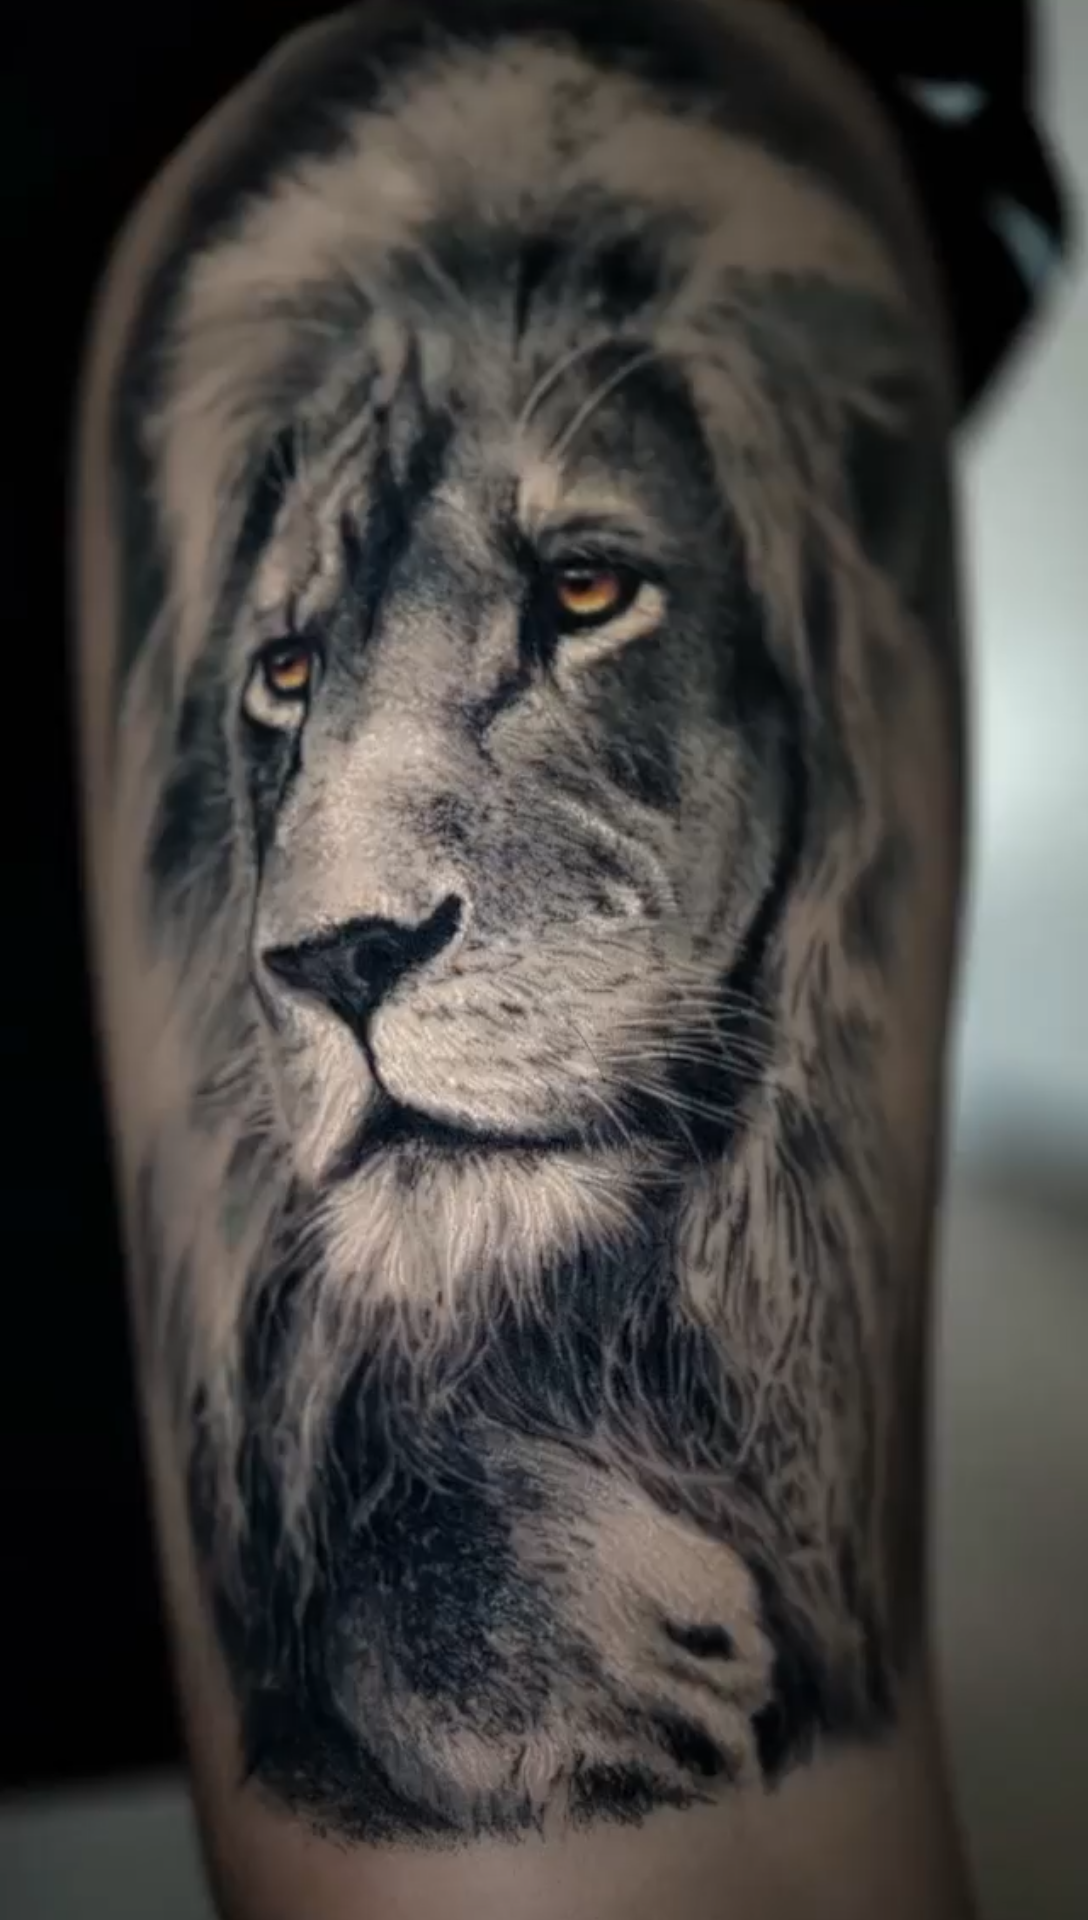 青毛狮子纹身图片